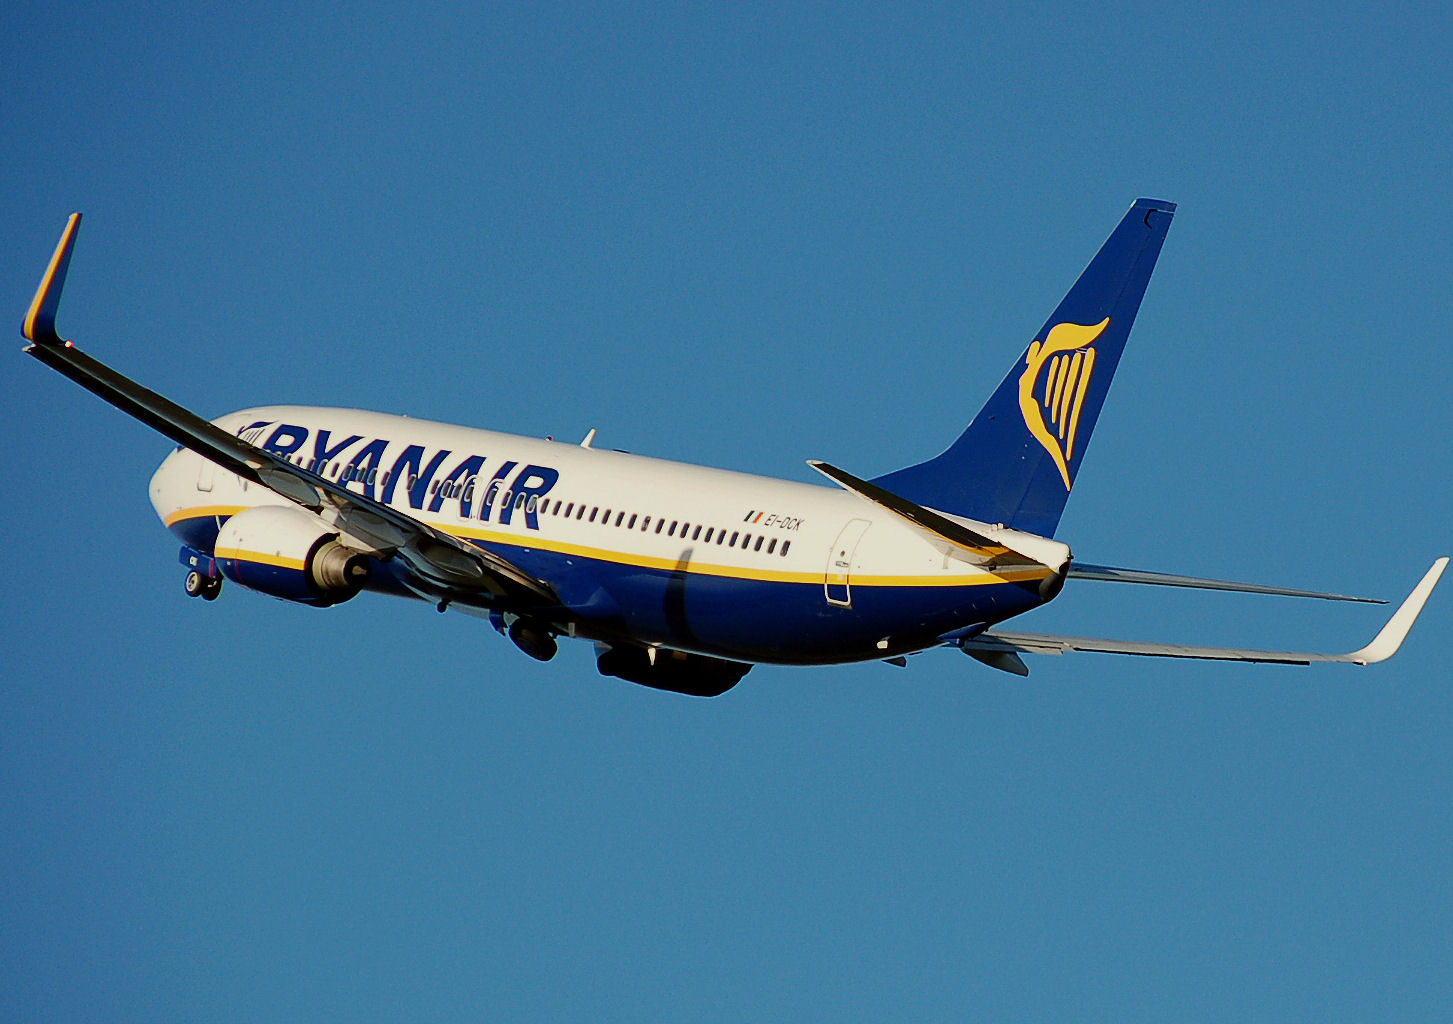 A munkajog megsértésért 10 millió eurós kártérítésre ítélte a Ryanairt egy francia bíróság